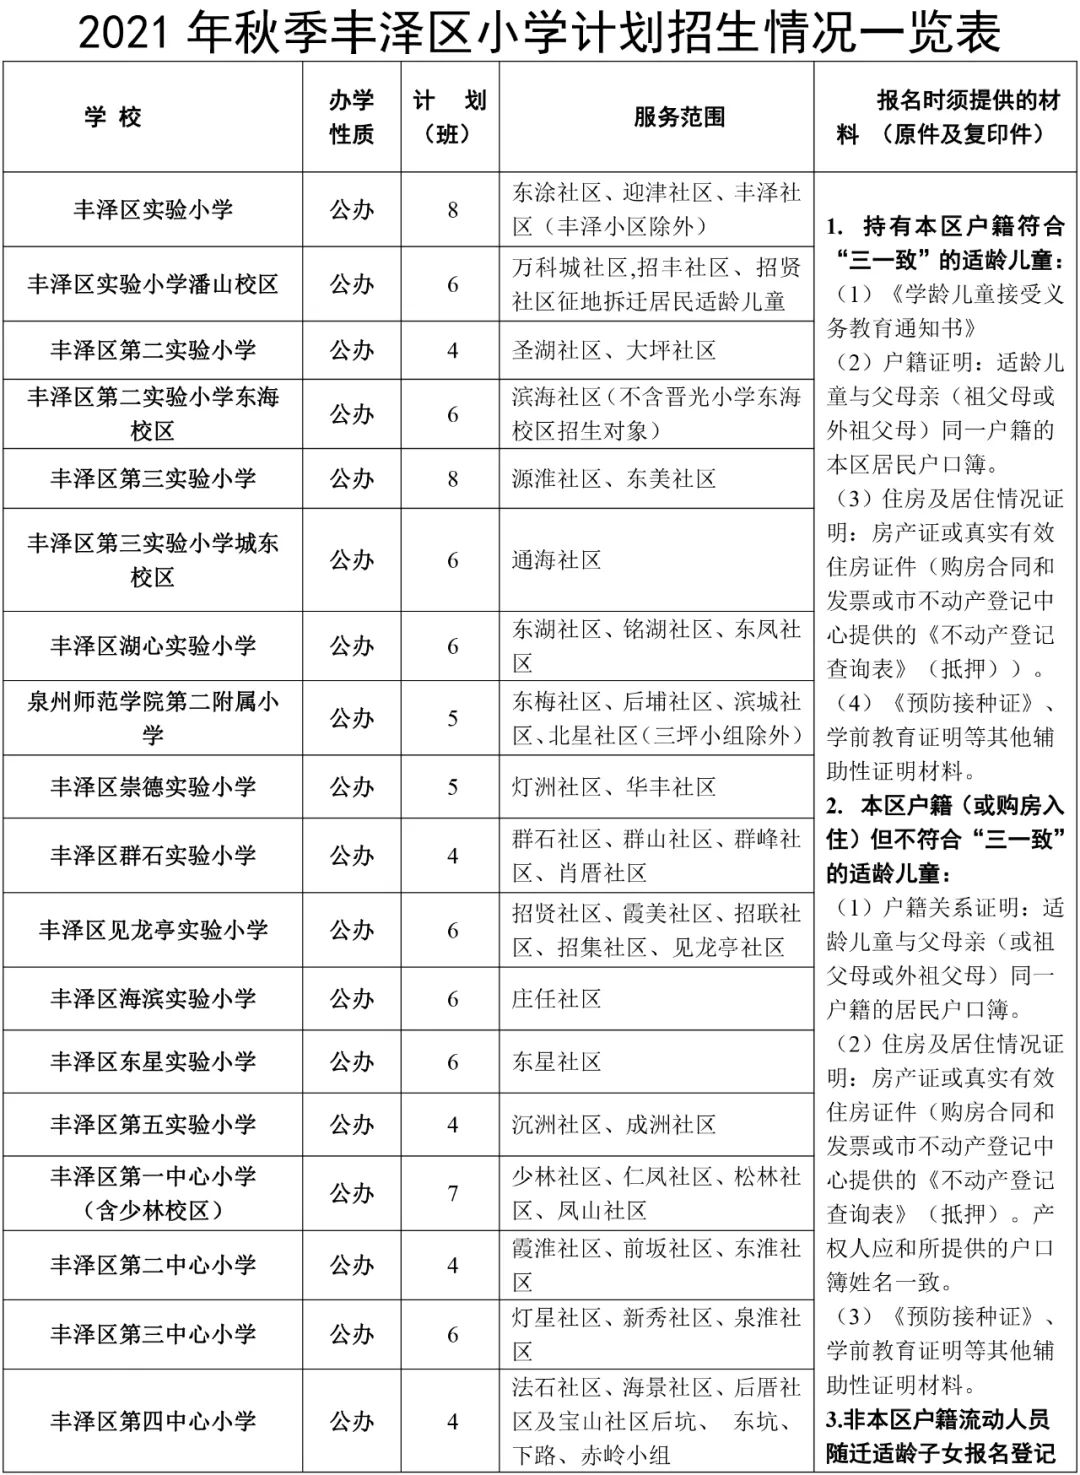 丰泽、洛江小学幼儿园今秋招生方案有变化！部分学校发布招生预警